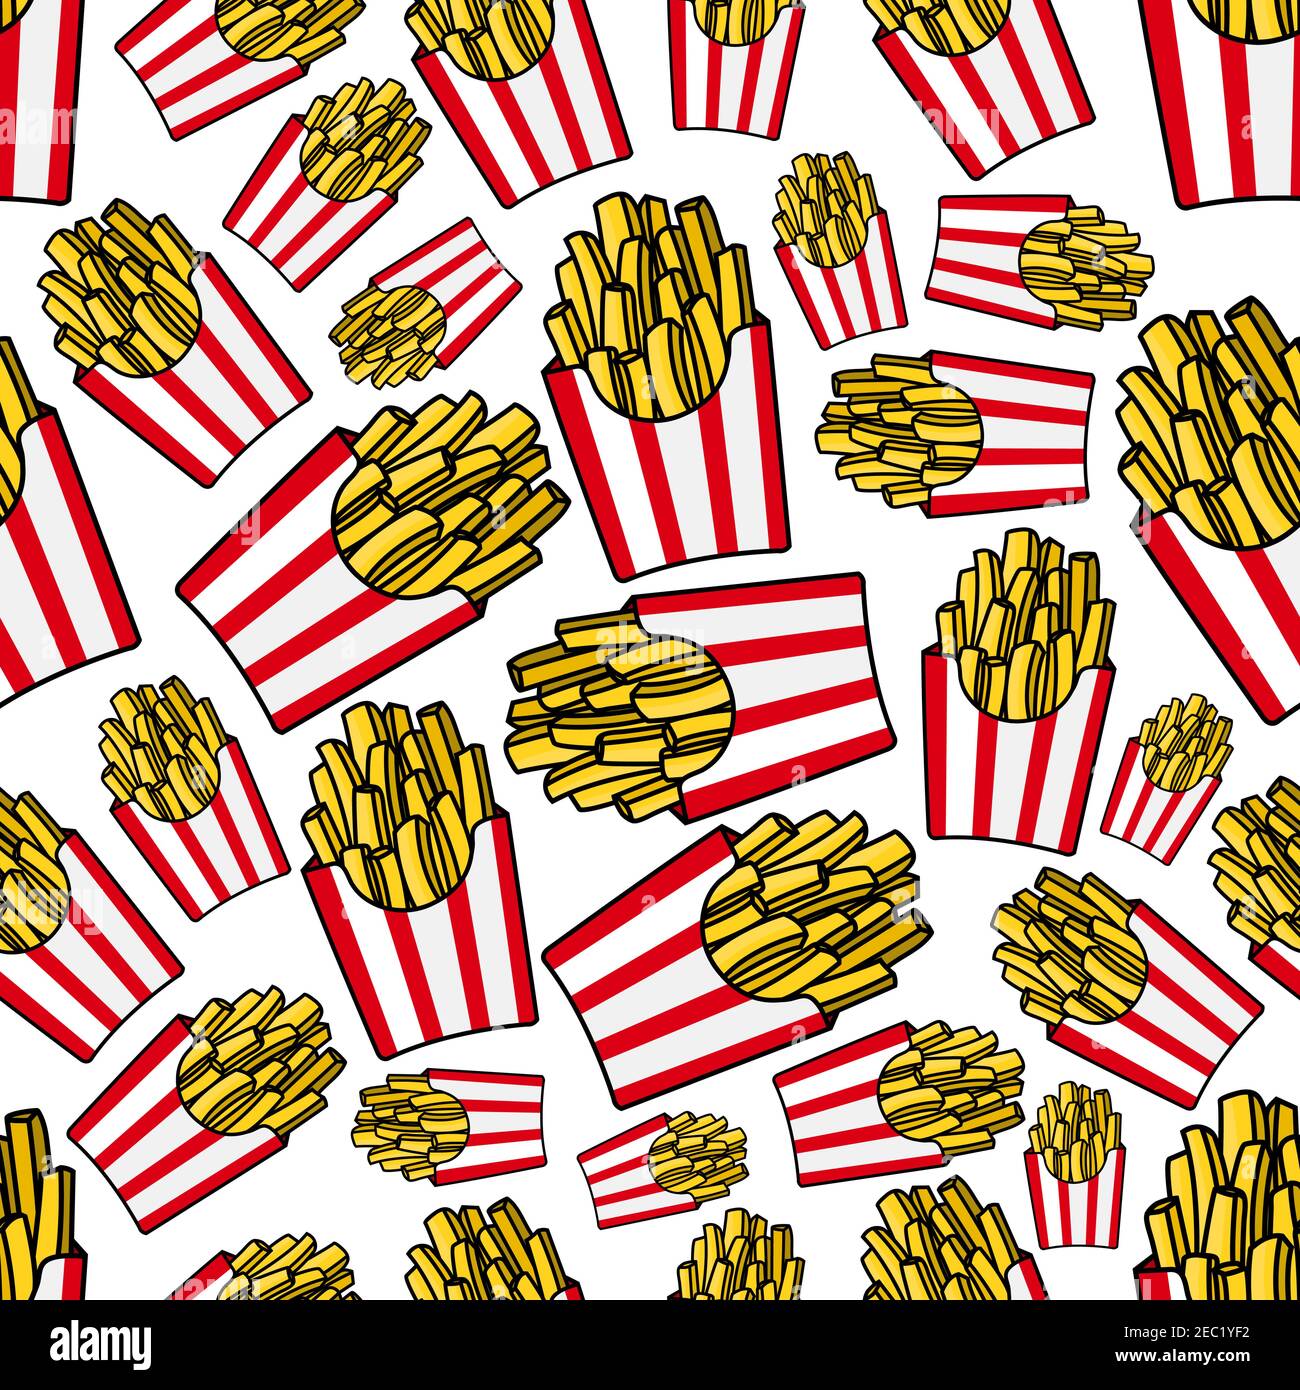 Takeaway französisch Pommes Cartoon Hintergrund mit nahtlosen Muster aus weiß und rot gestreiften Papierschachteln mit gebratenen Kartoffeln. Fastfood Café, Textildruck o Stock Vektor